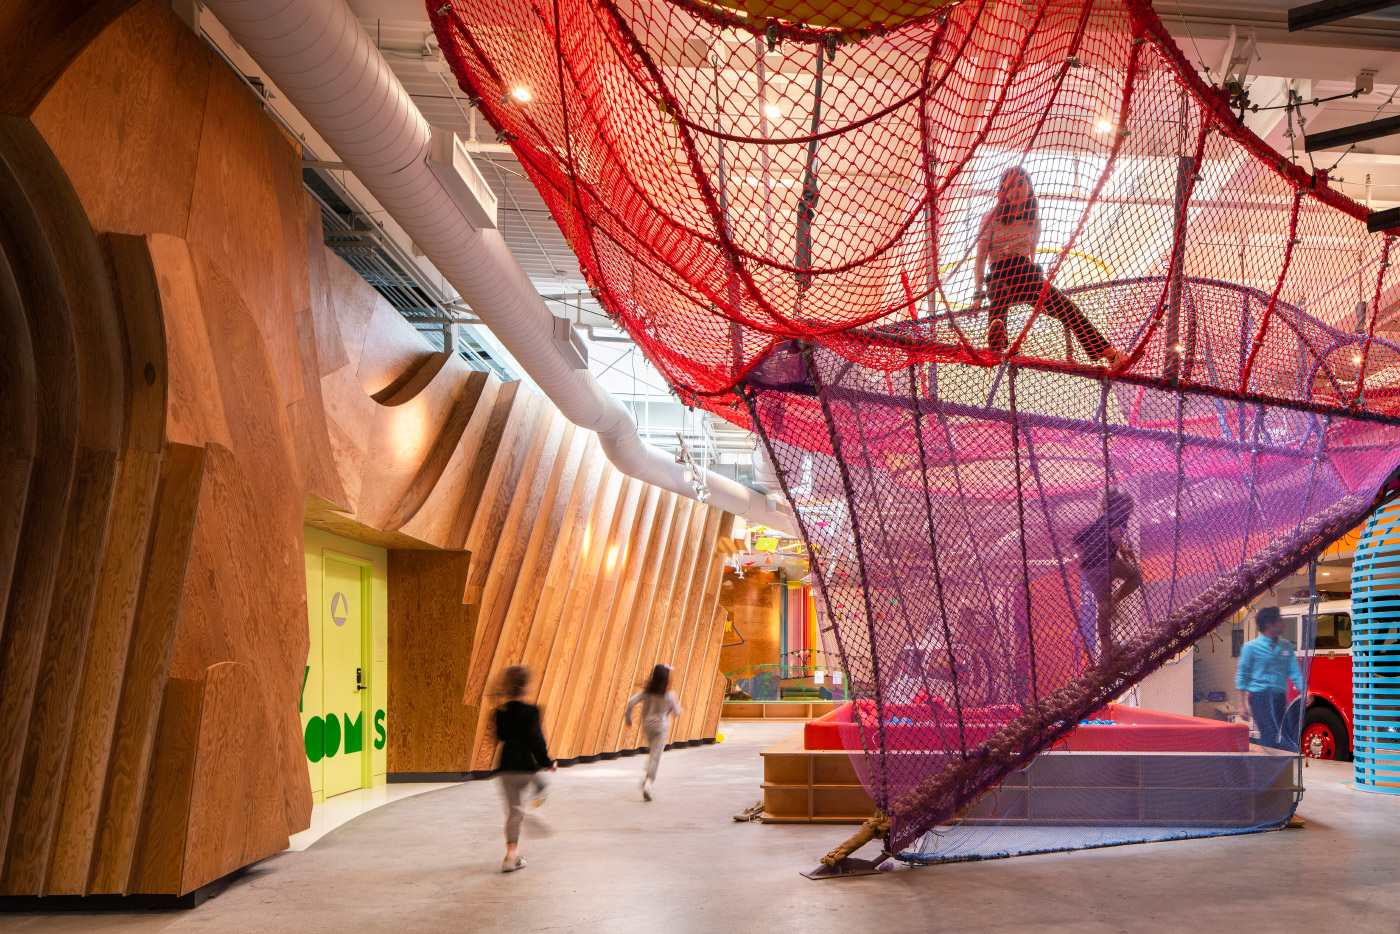 凯顿儿童博物馆的一个空间，孩子们在五彩缤纷的网里奔跑